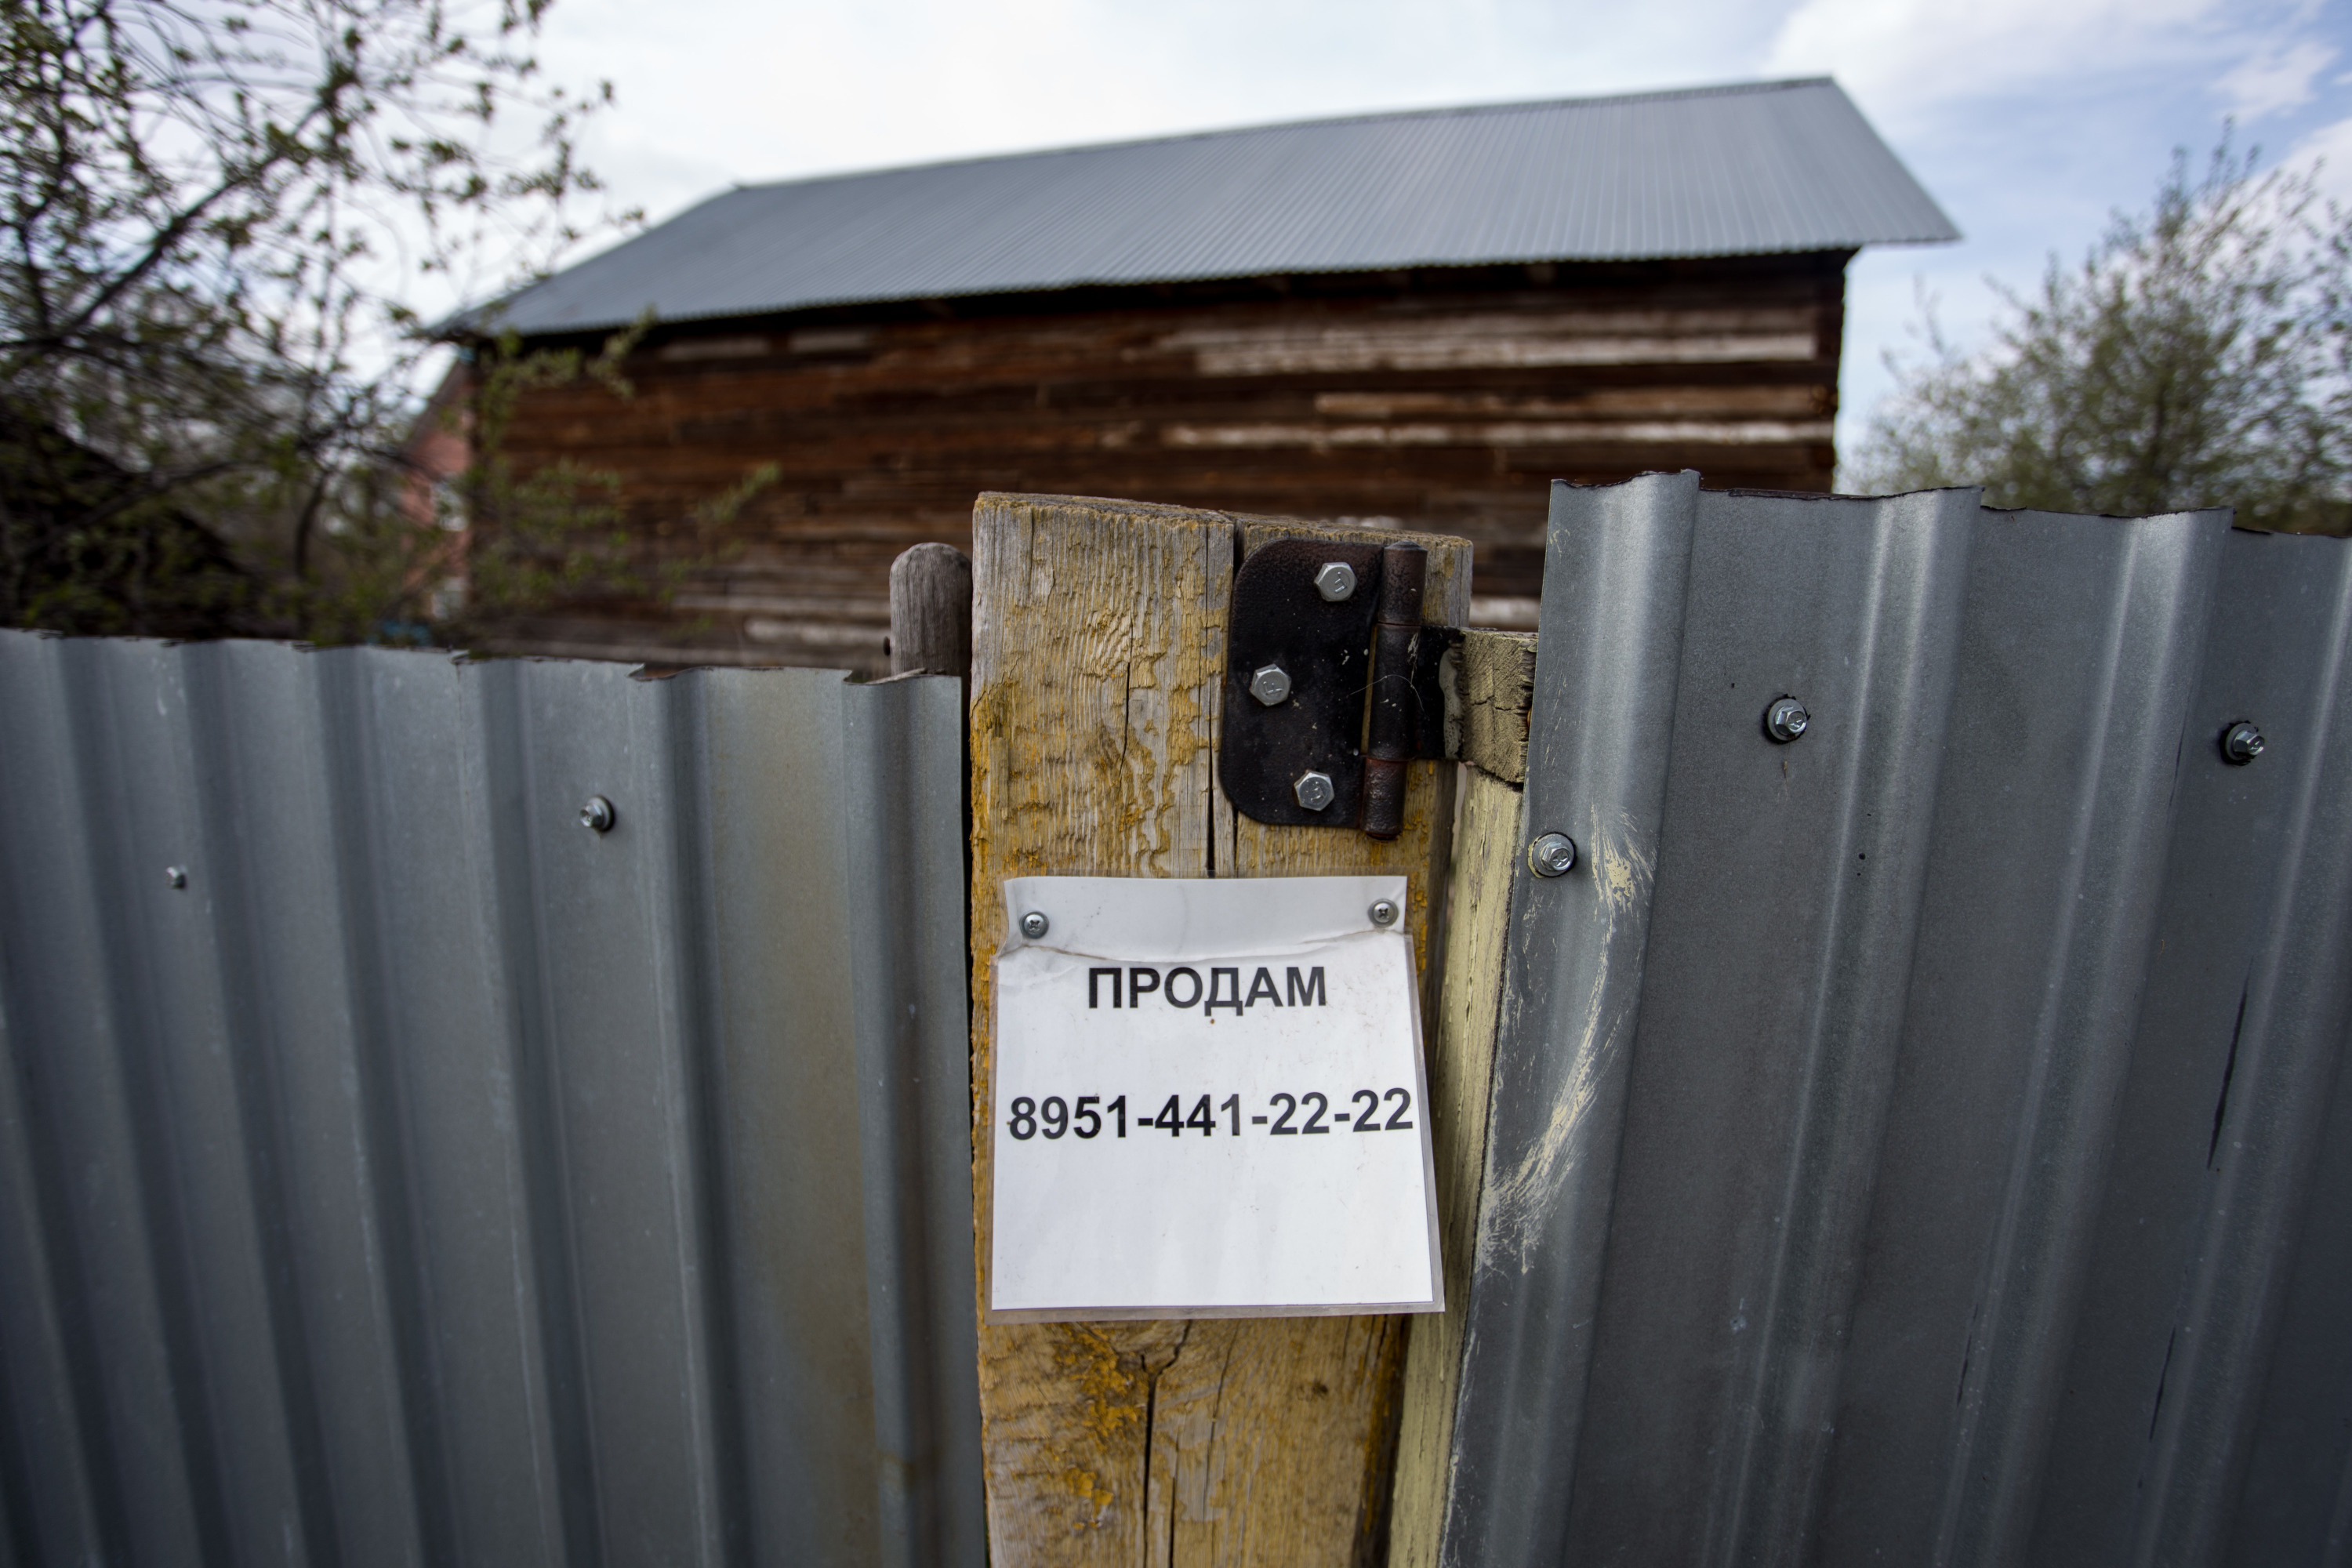 Прямо сейчас в посёлке продают несколько участков с домами. Цены варьируются от 2 до 4 миллионов рублей